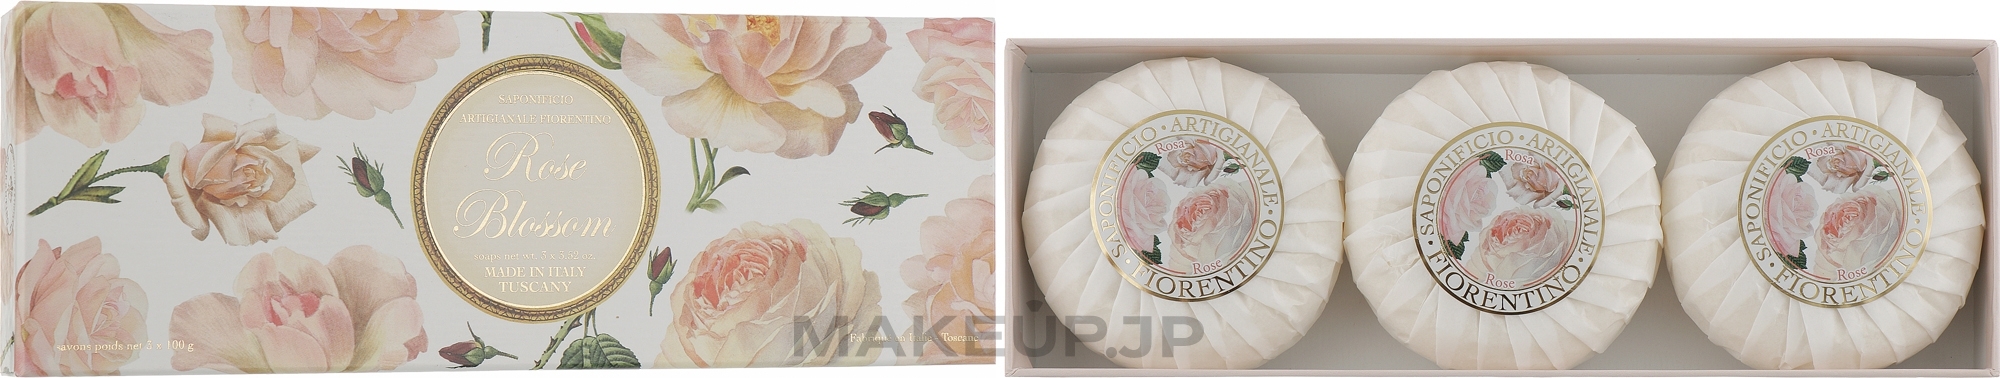 Soap Set "Rose" - Saponificio Artigianale Fiorentino Rose Blossom Soap — photo 3 x 100 g